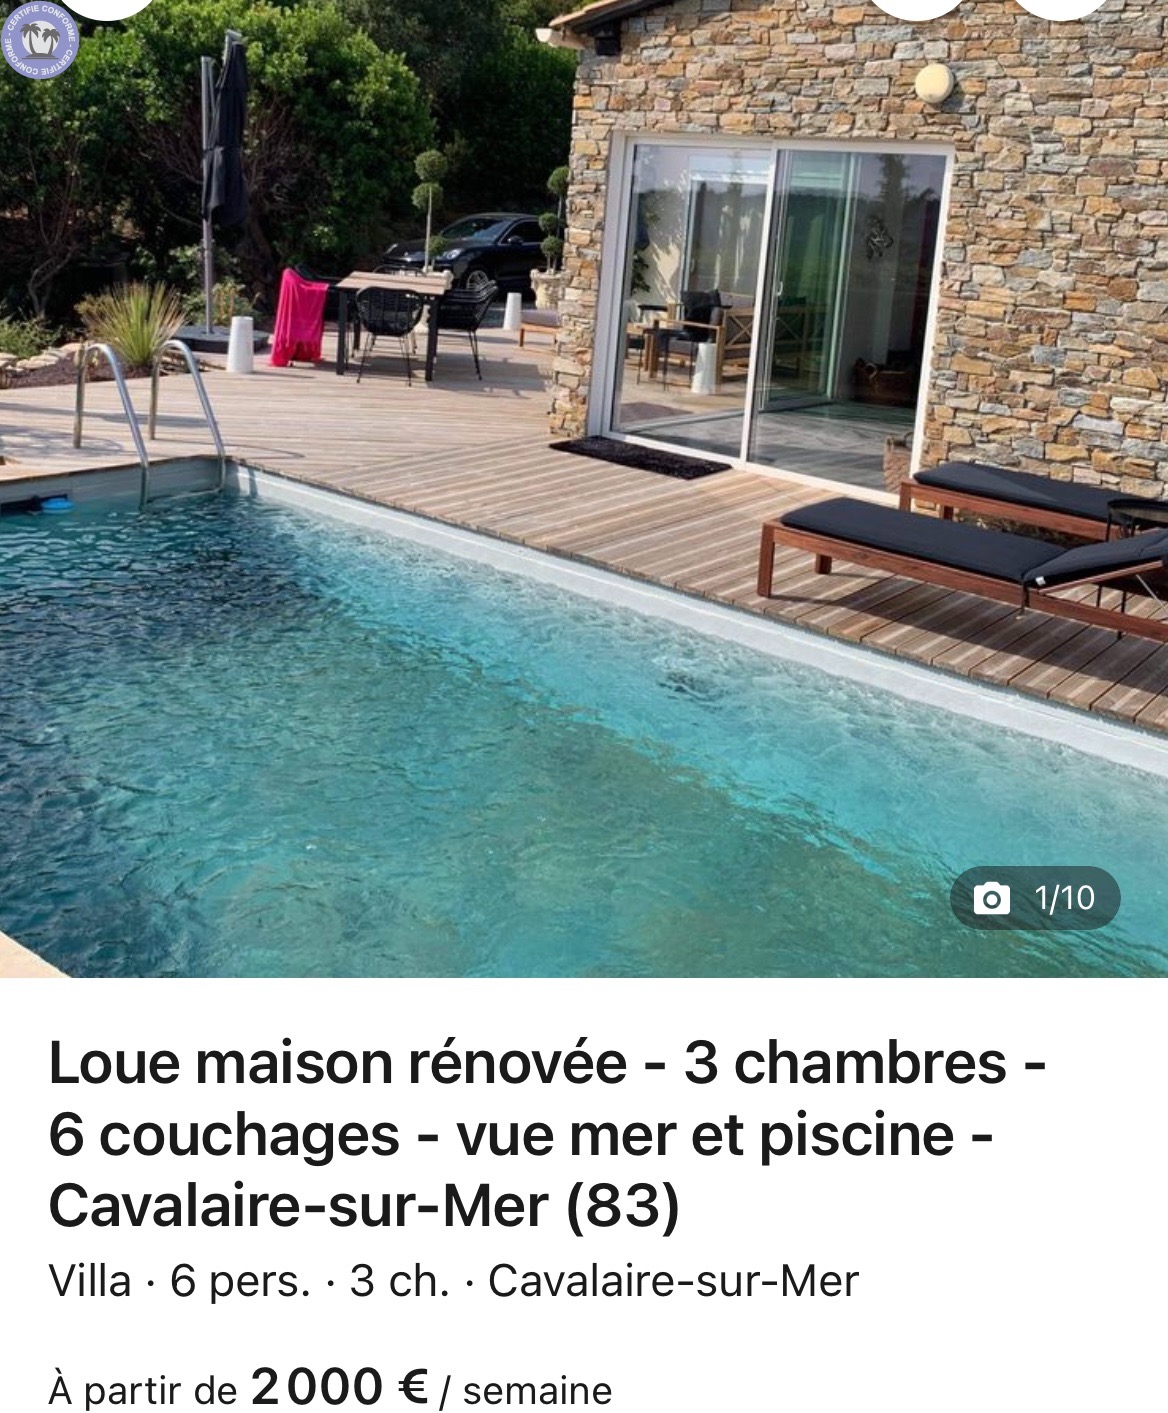 Gites-amp-Chambres-d-hotes-Provence-Alpes-Cote-d-Azur-Var-A-louer-Villa-3-chambres-piscine-chauffee-et-vue-mer-proche-Saint-Tropez-19202327303234373877.jpeg